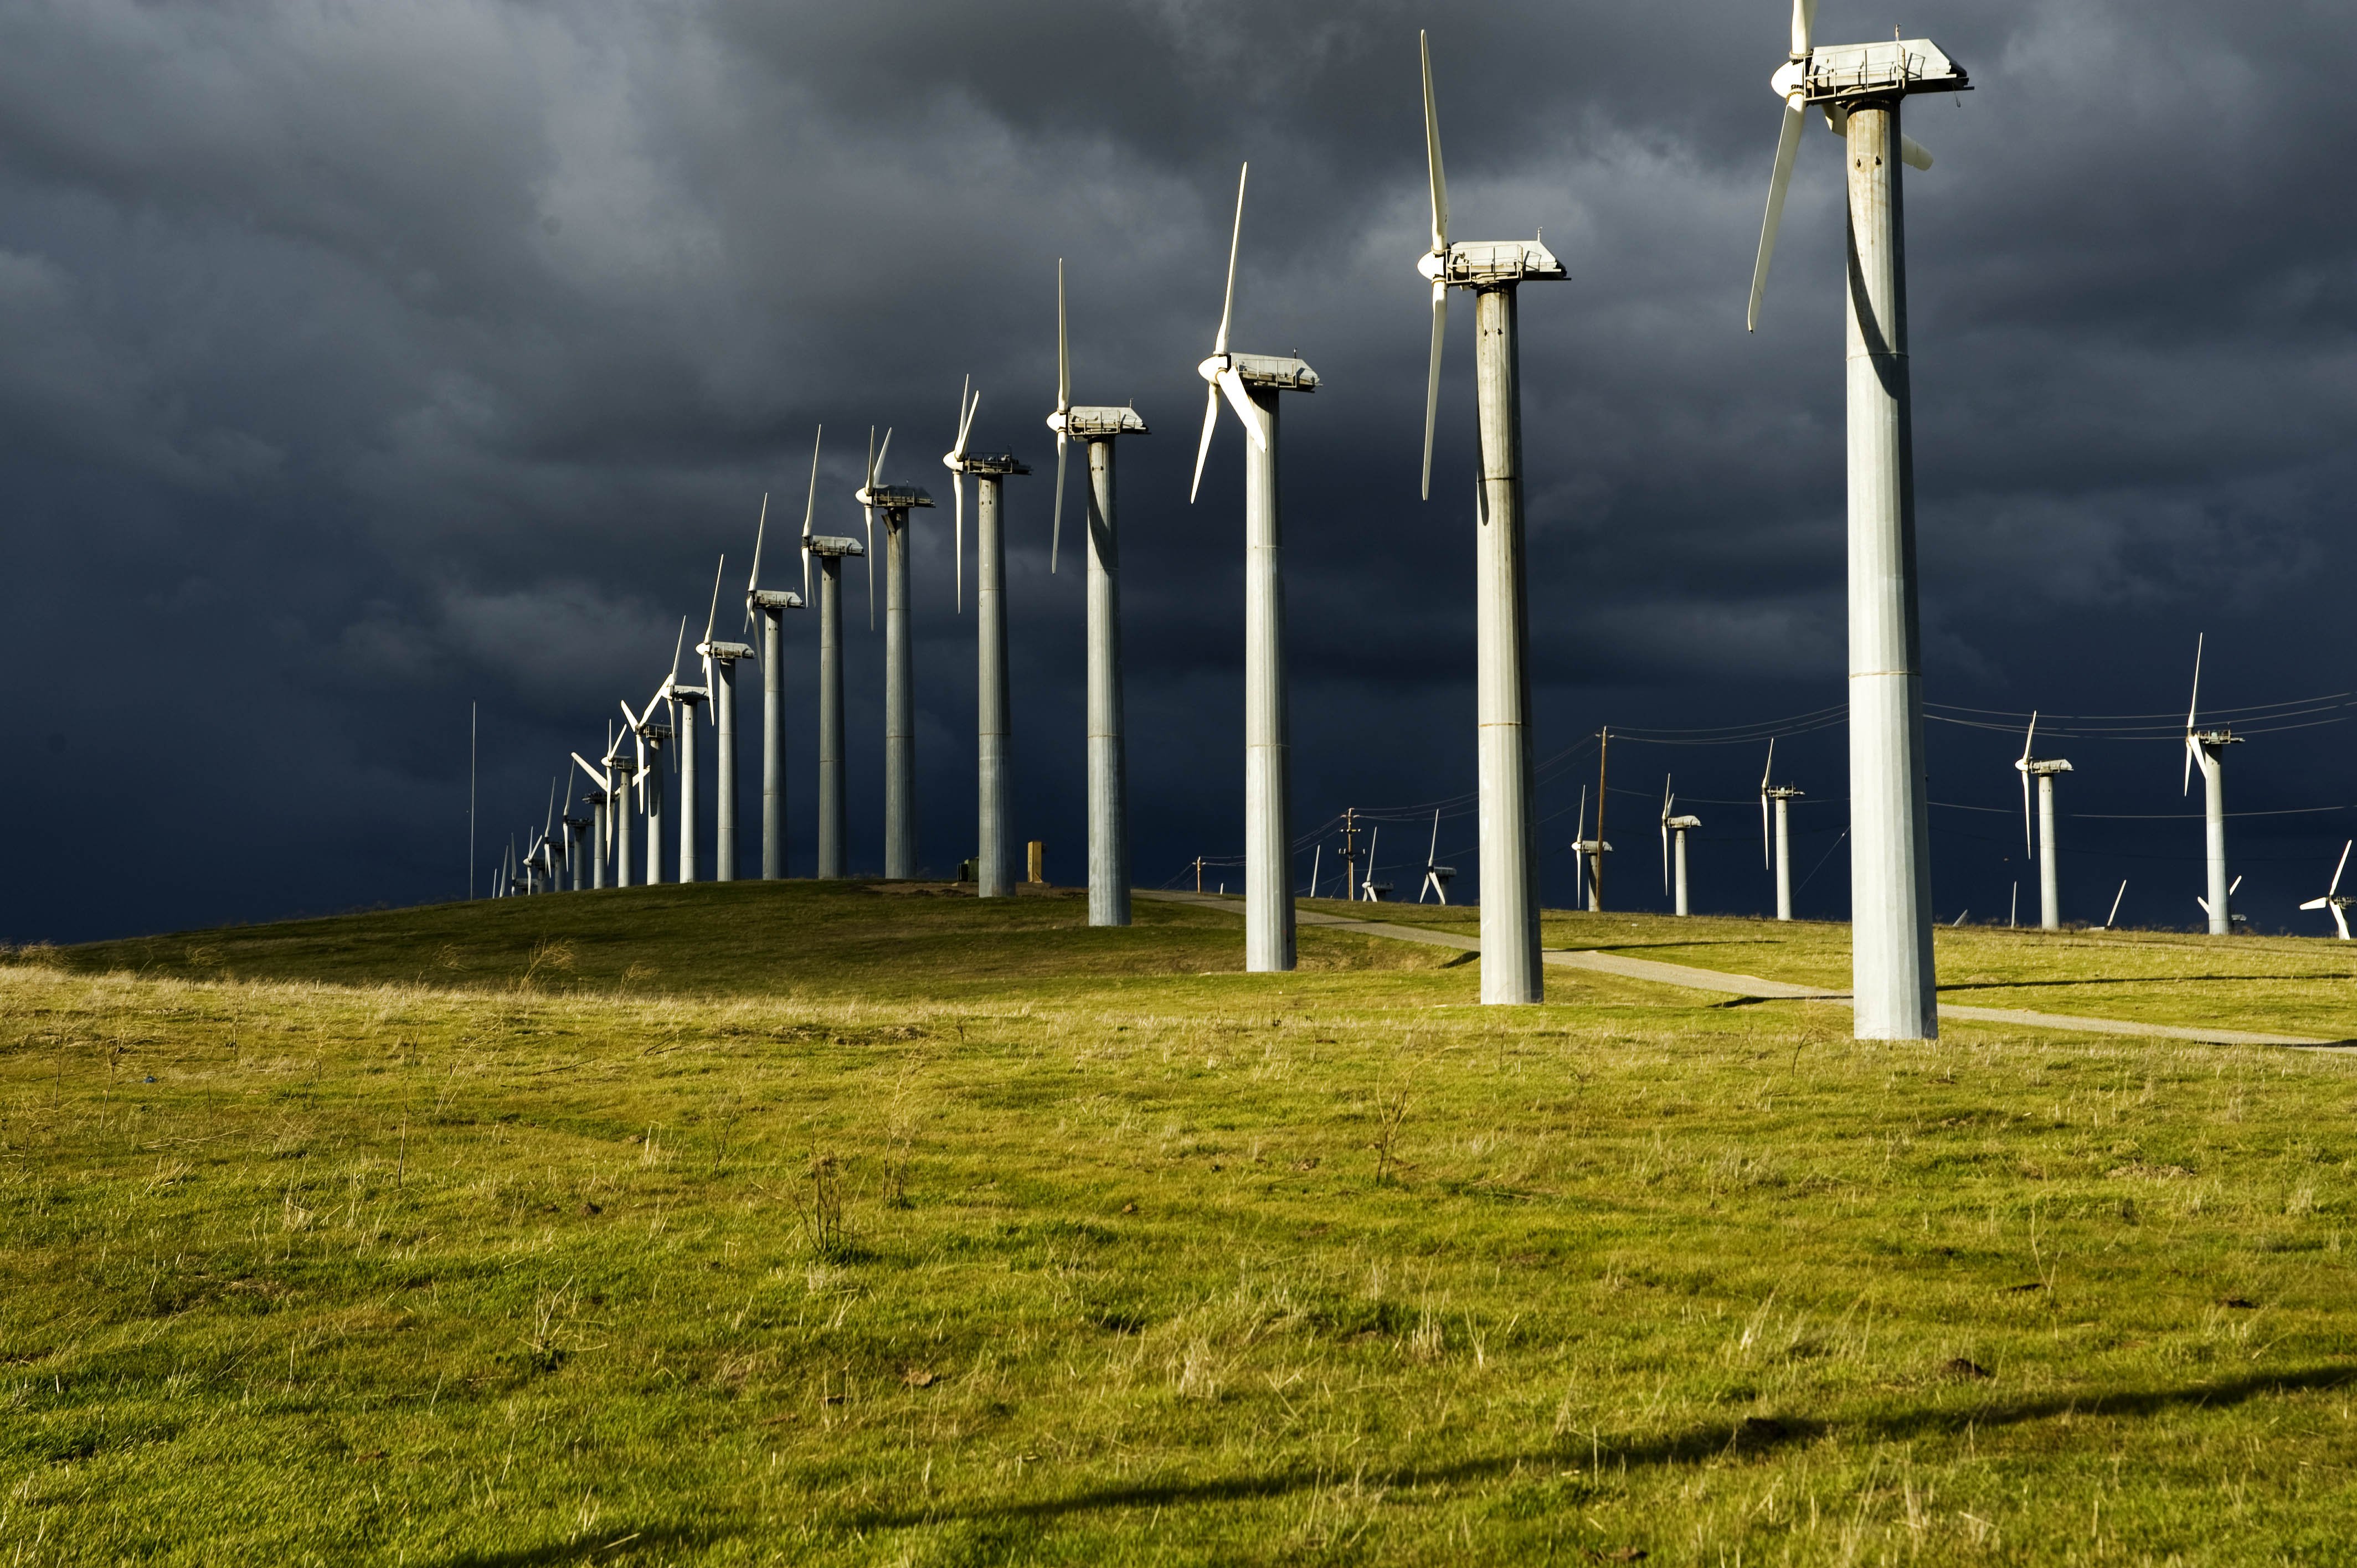 Німеччина, Данія, Нідерланди та Бельгія витратять 135 мільярдів євро на розвиток вітрової енергетики, - Euroactive